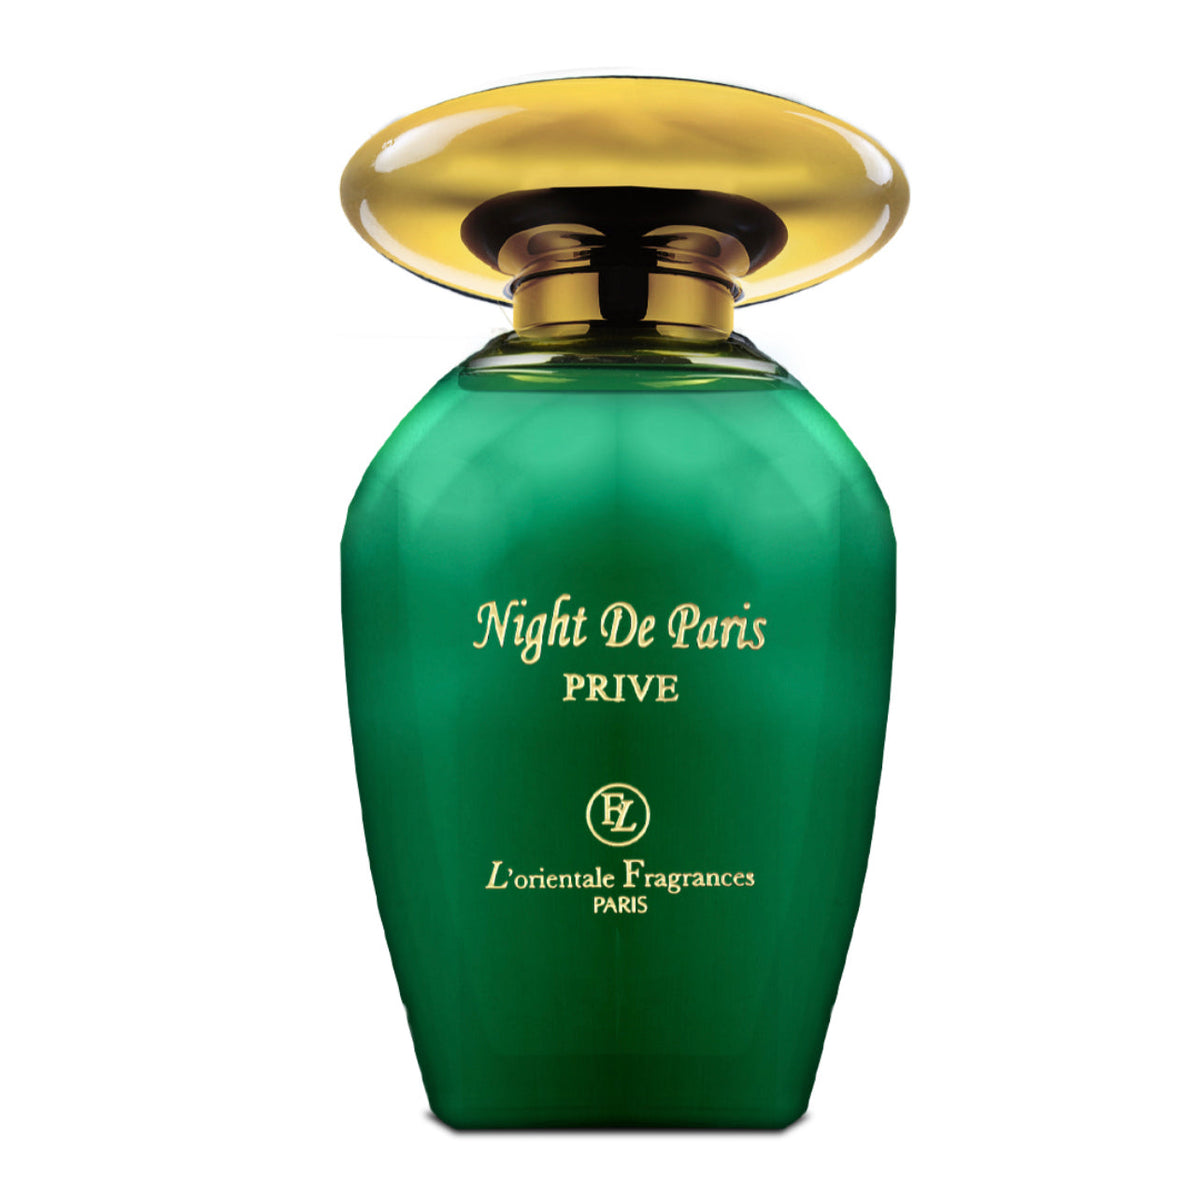 Night de Paris Prive By L'Orientale Fragrances Eau De Parfum 3.4 Oz Spray